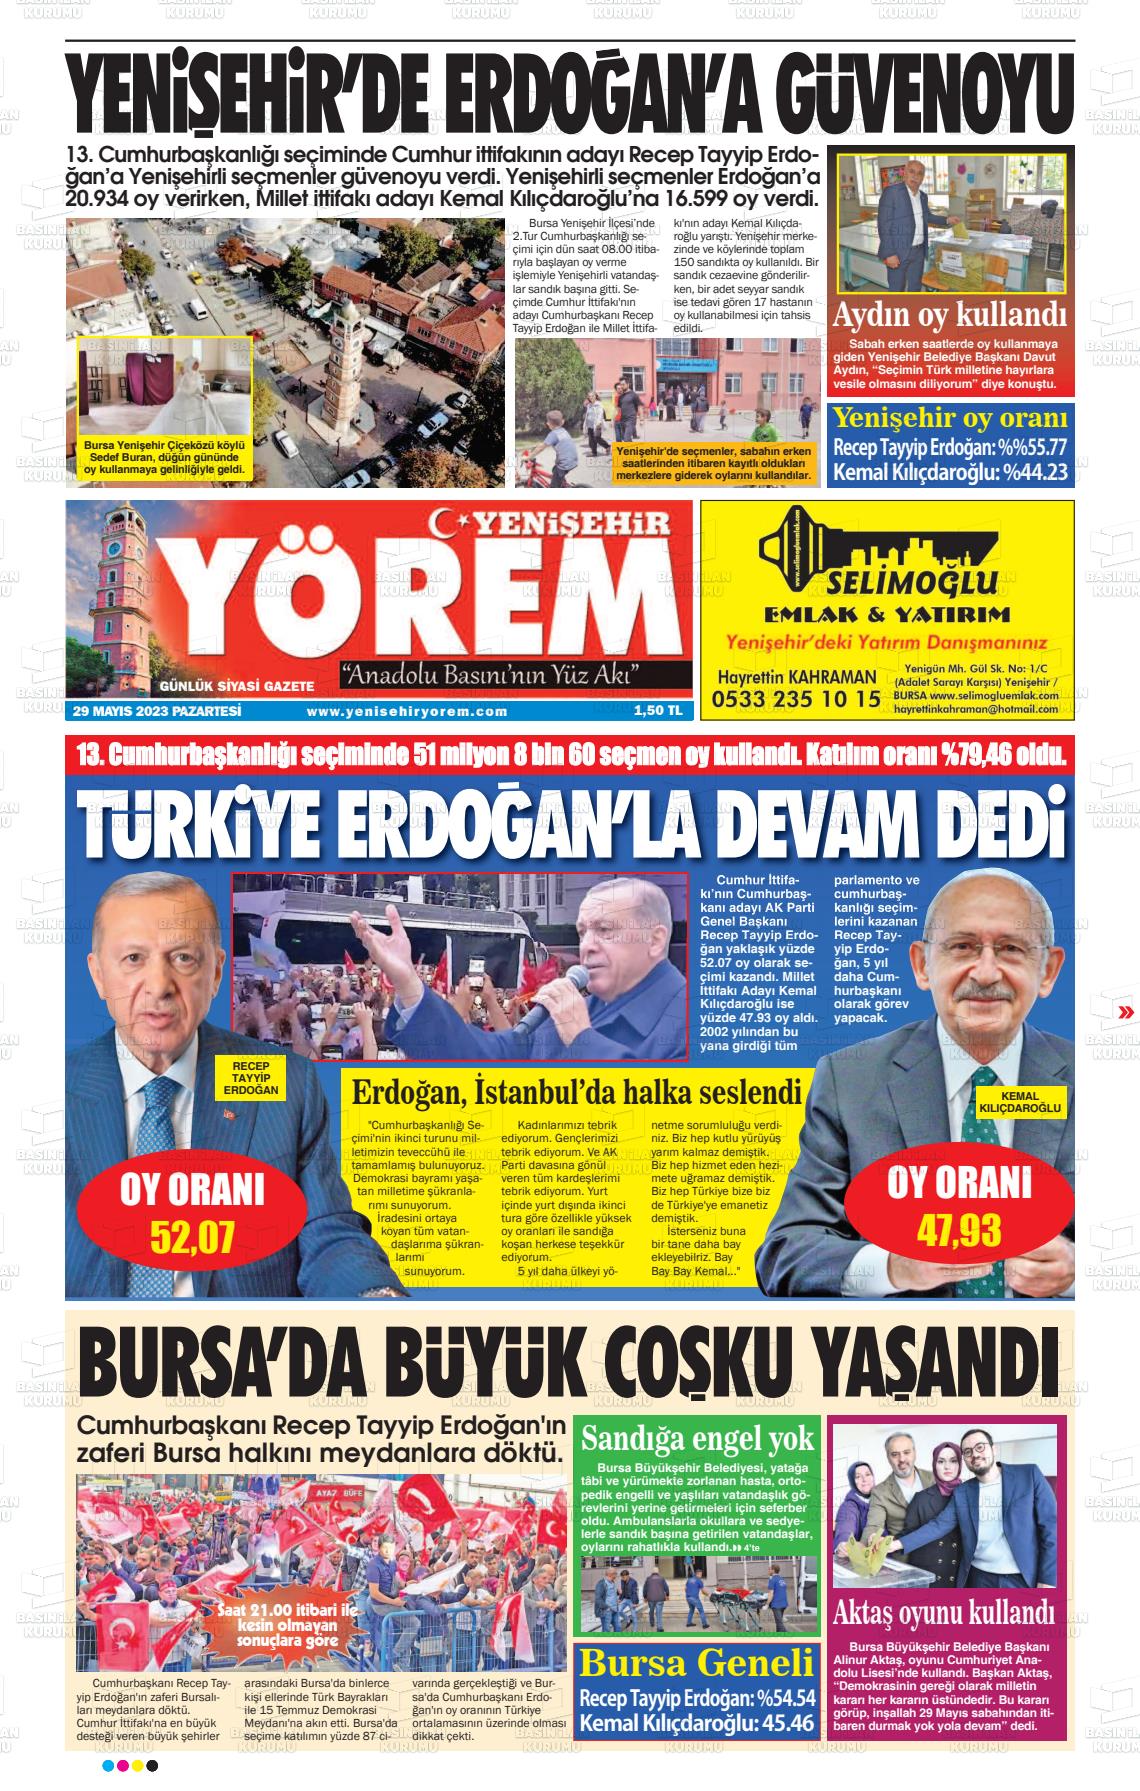 29 Mayıs 2023 Yenişehir Yörem Gazete Manşeti